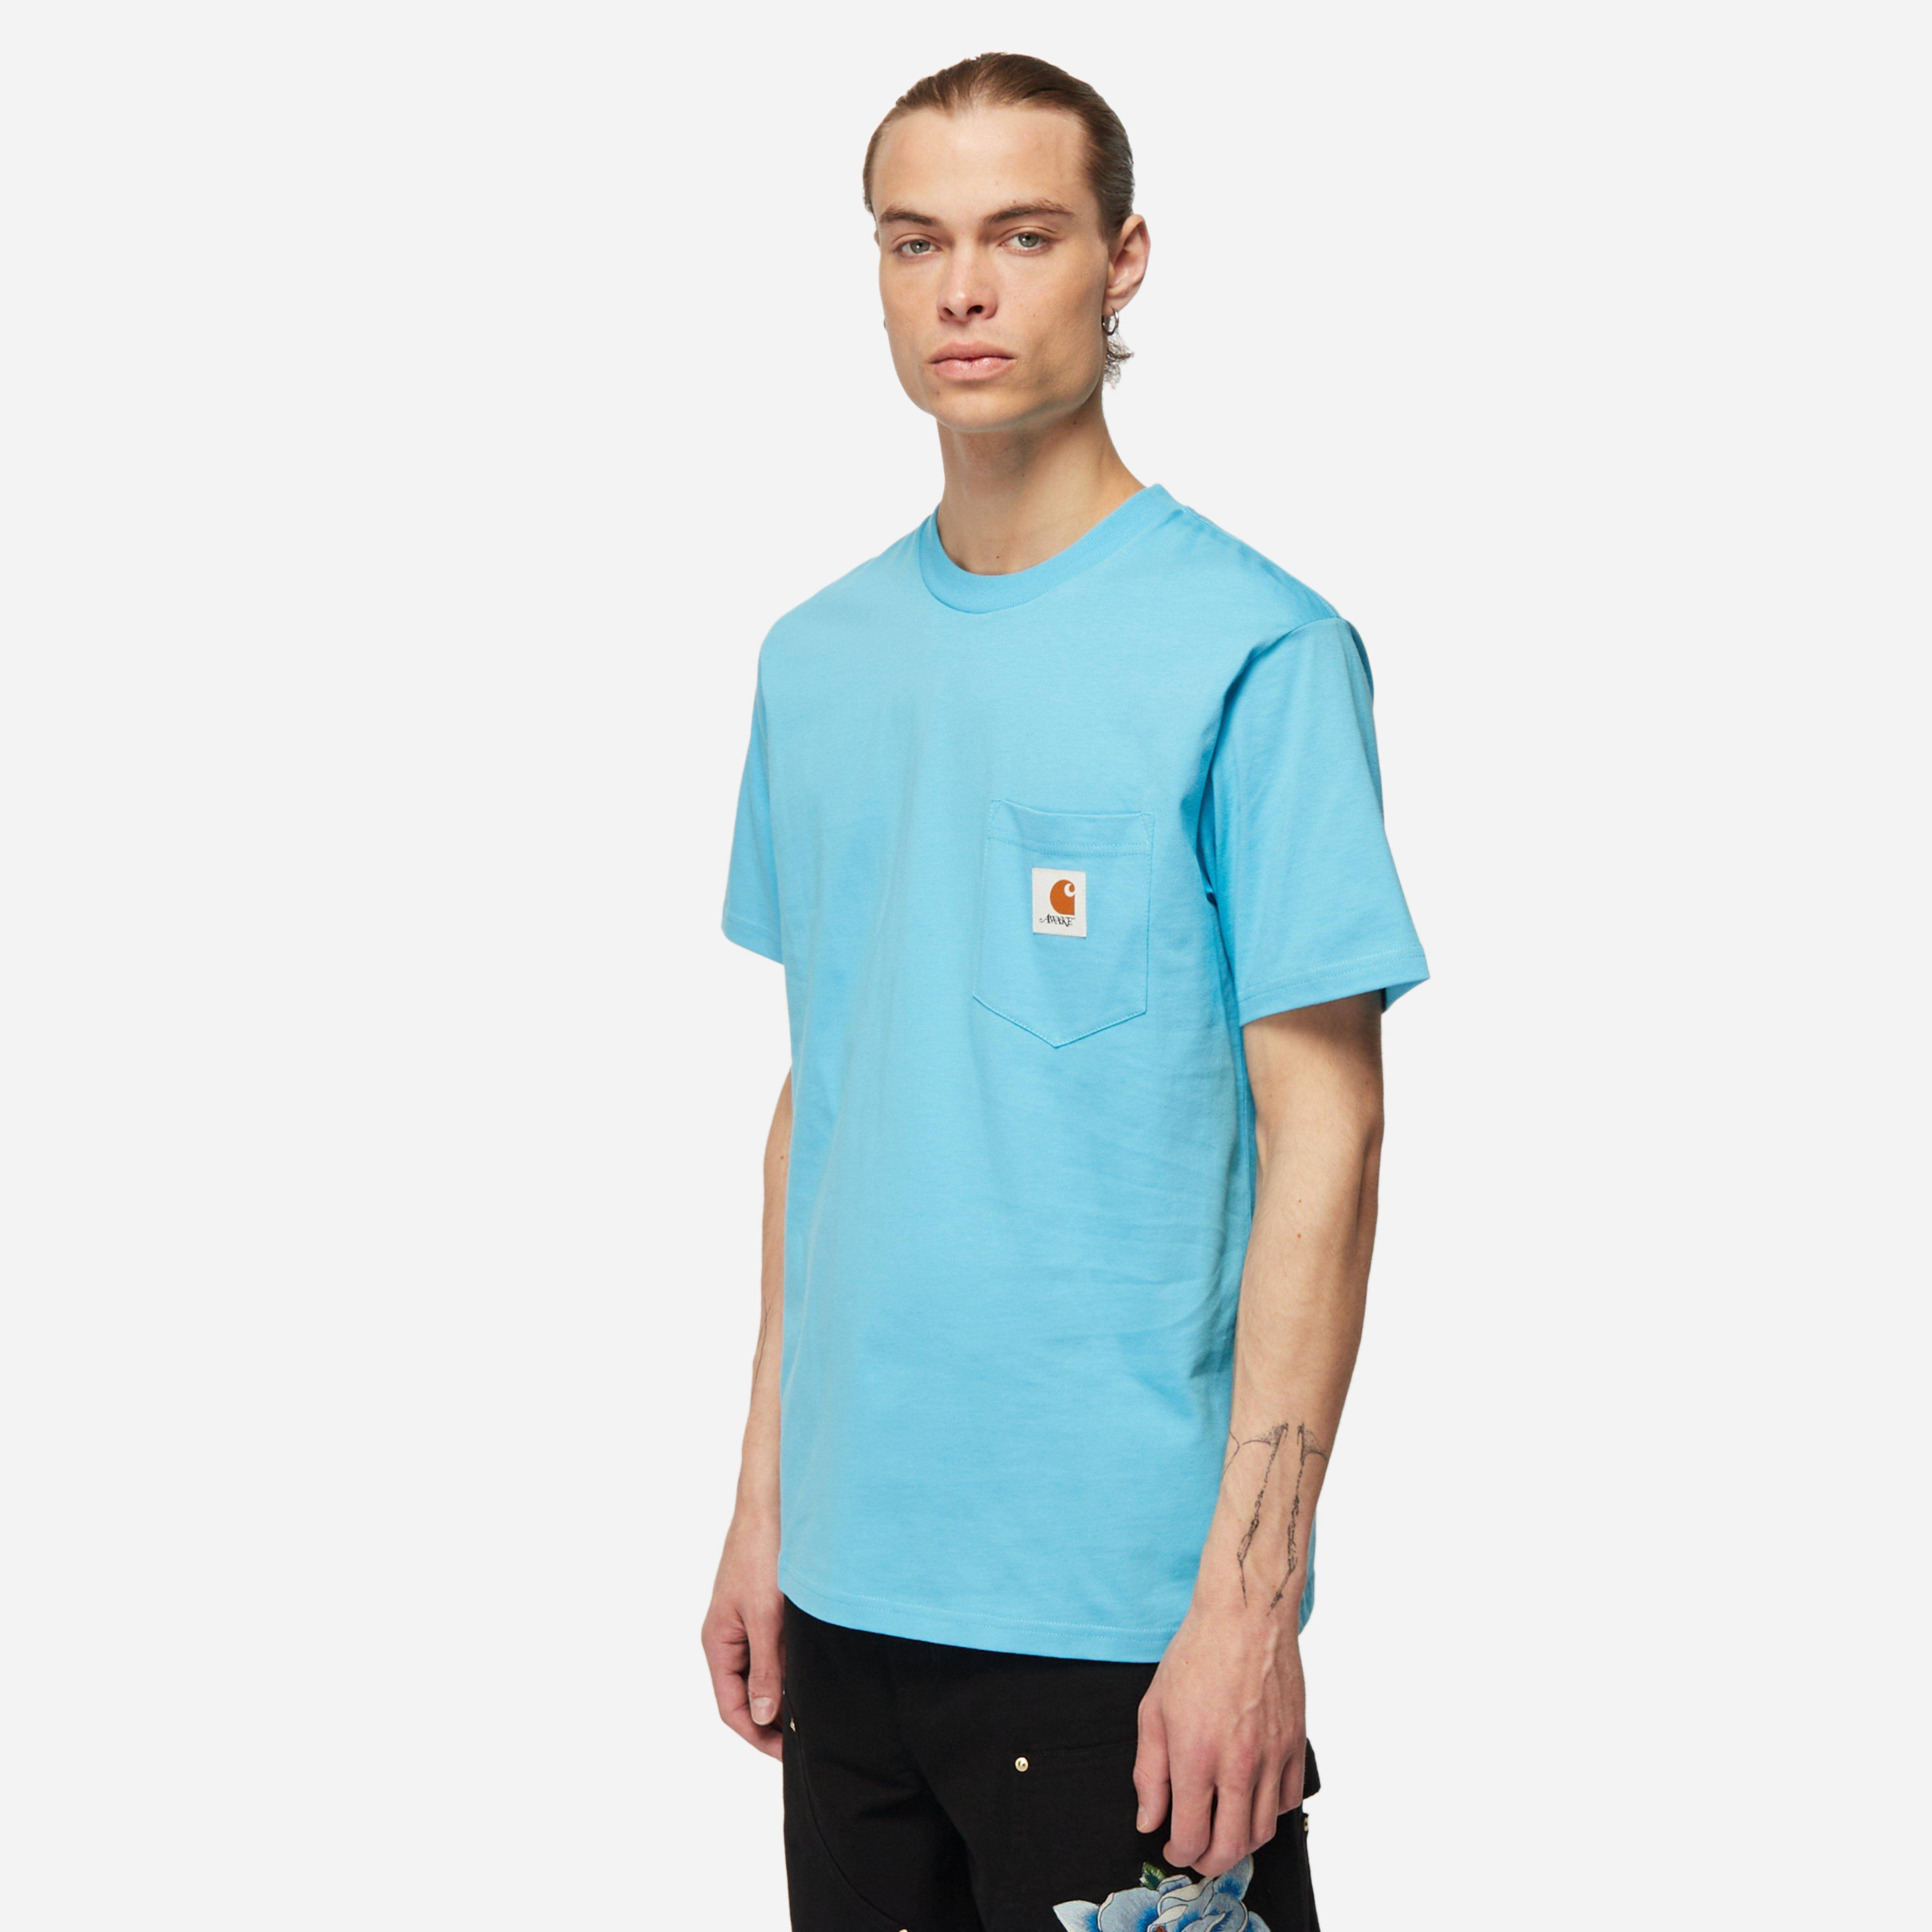 Carhartt WIP x Awake NY Pocket T-Shirt | Where To Buy | 19509452